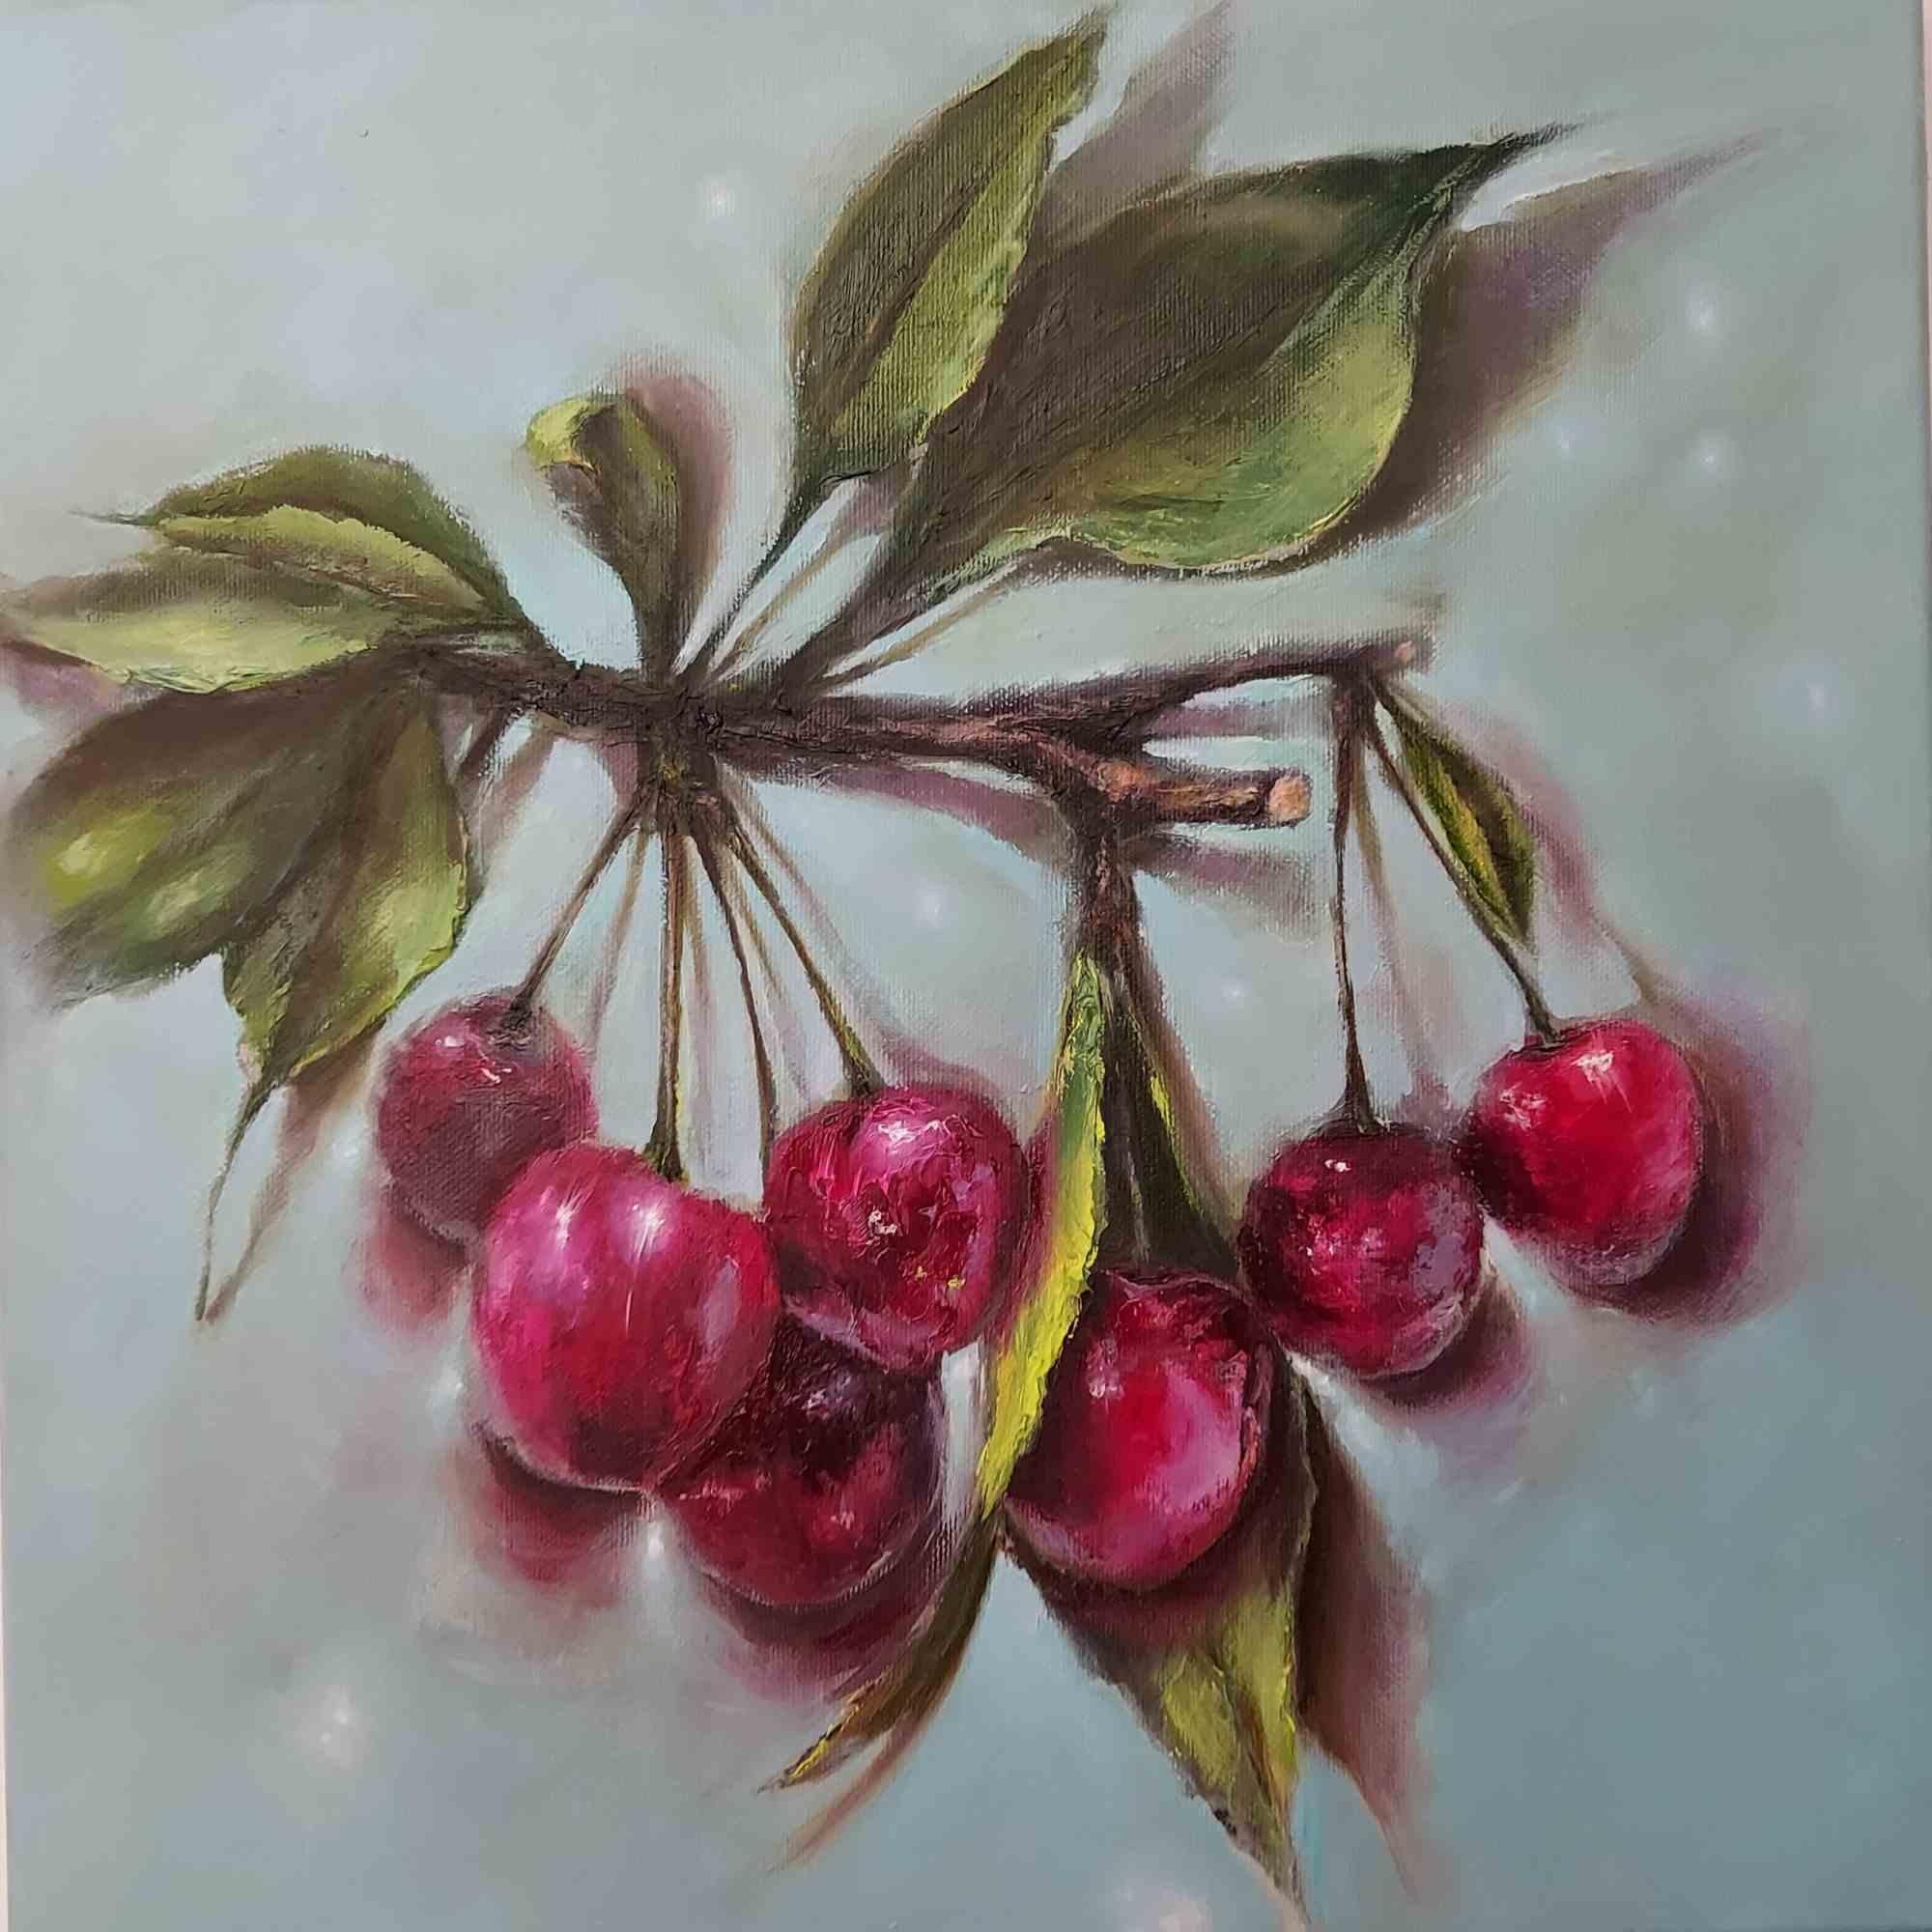 Cherries - Oil Painting by Elena Mardashova - 2021